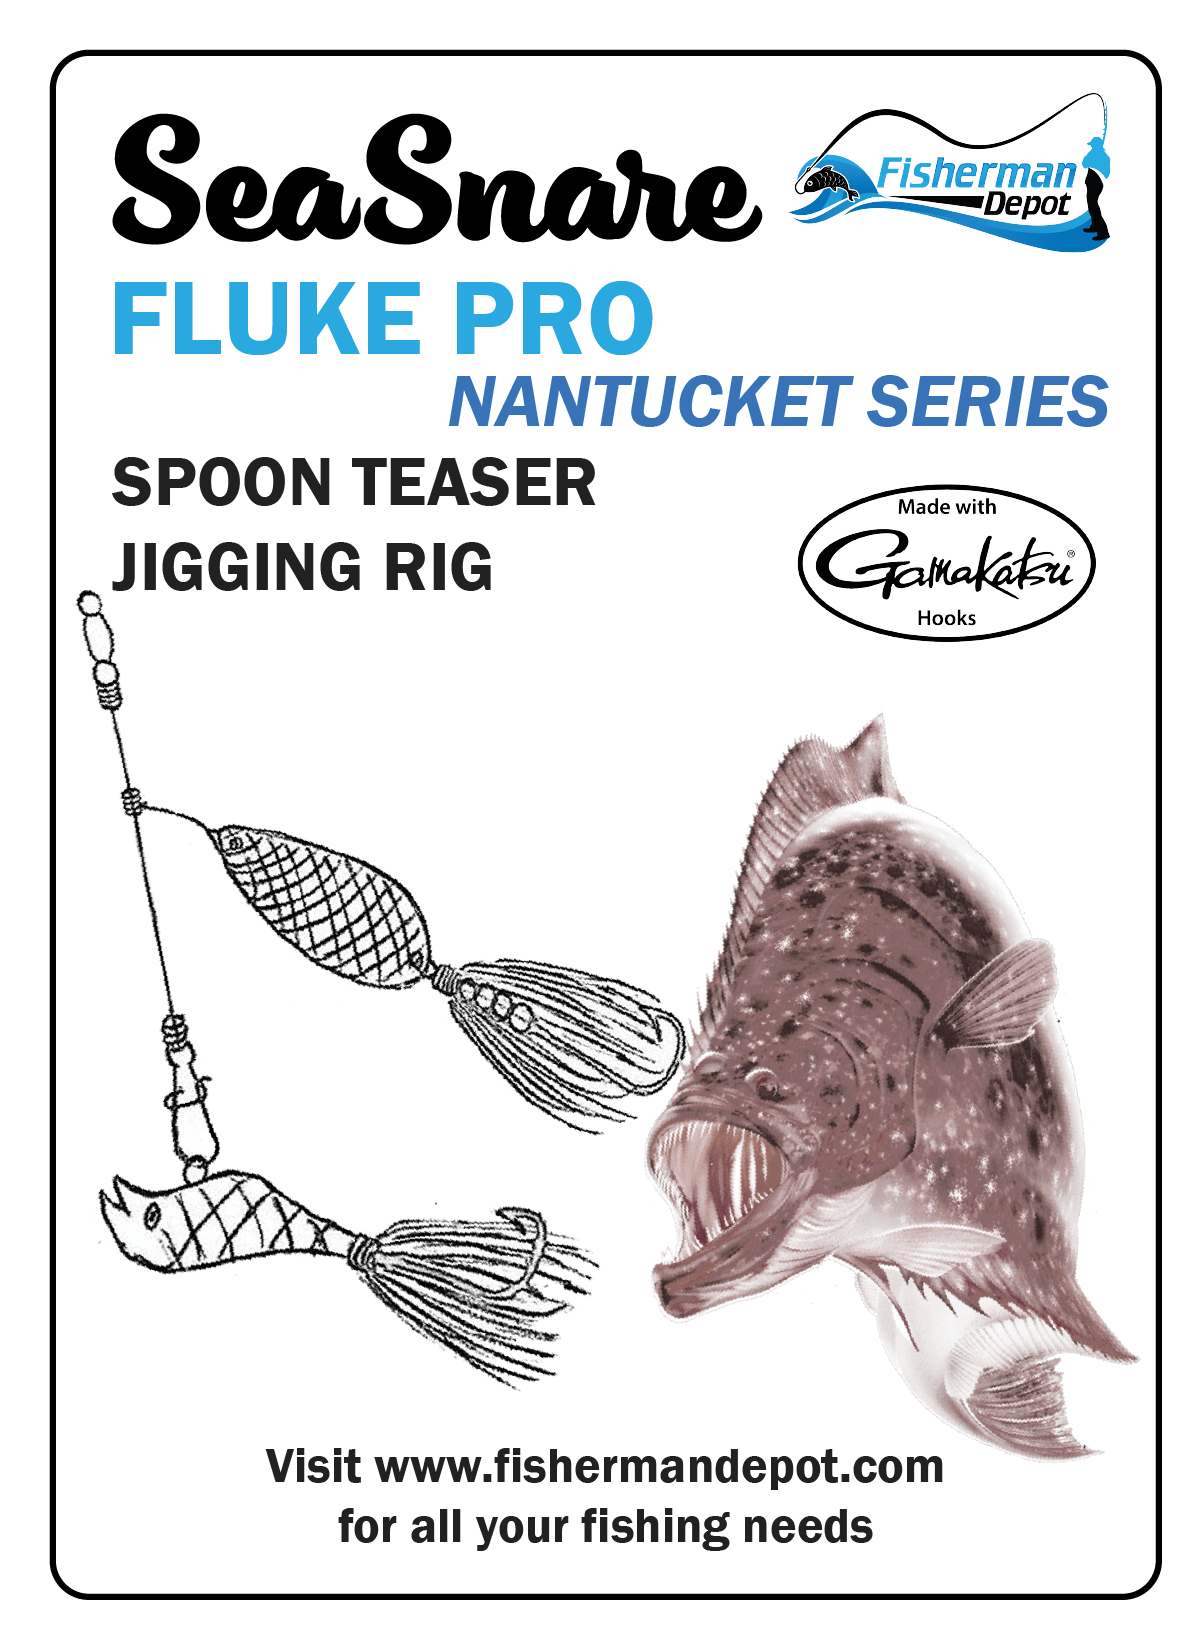 SeaSnare Fluke Pro Spoon Teaser Jigging Rig